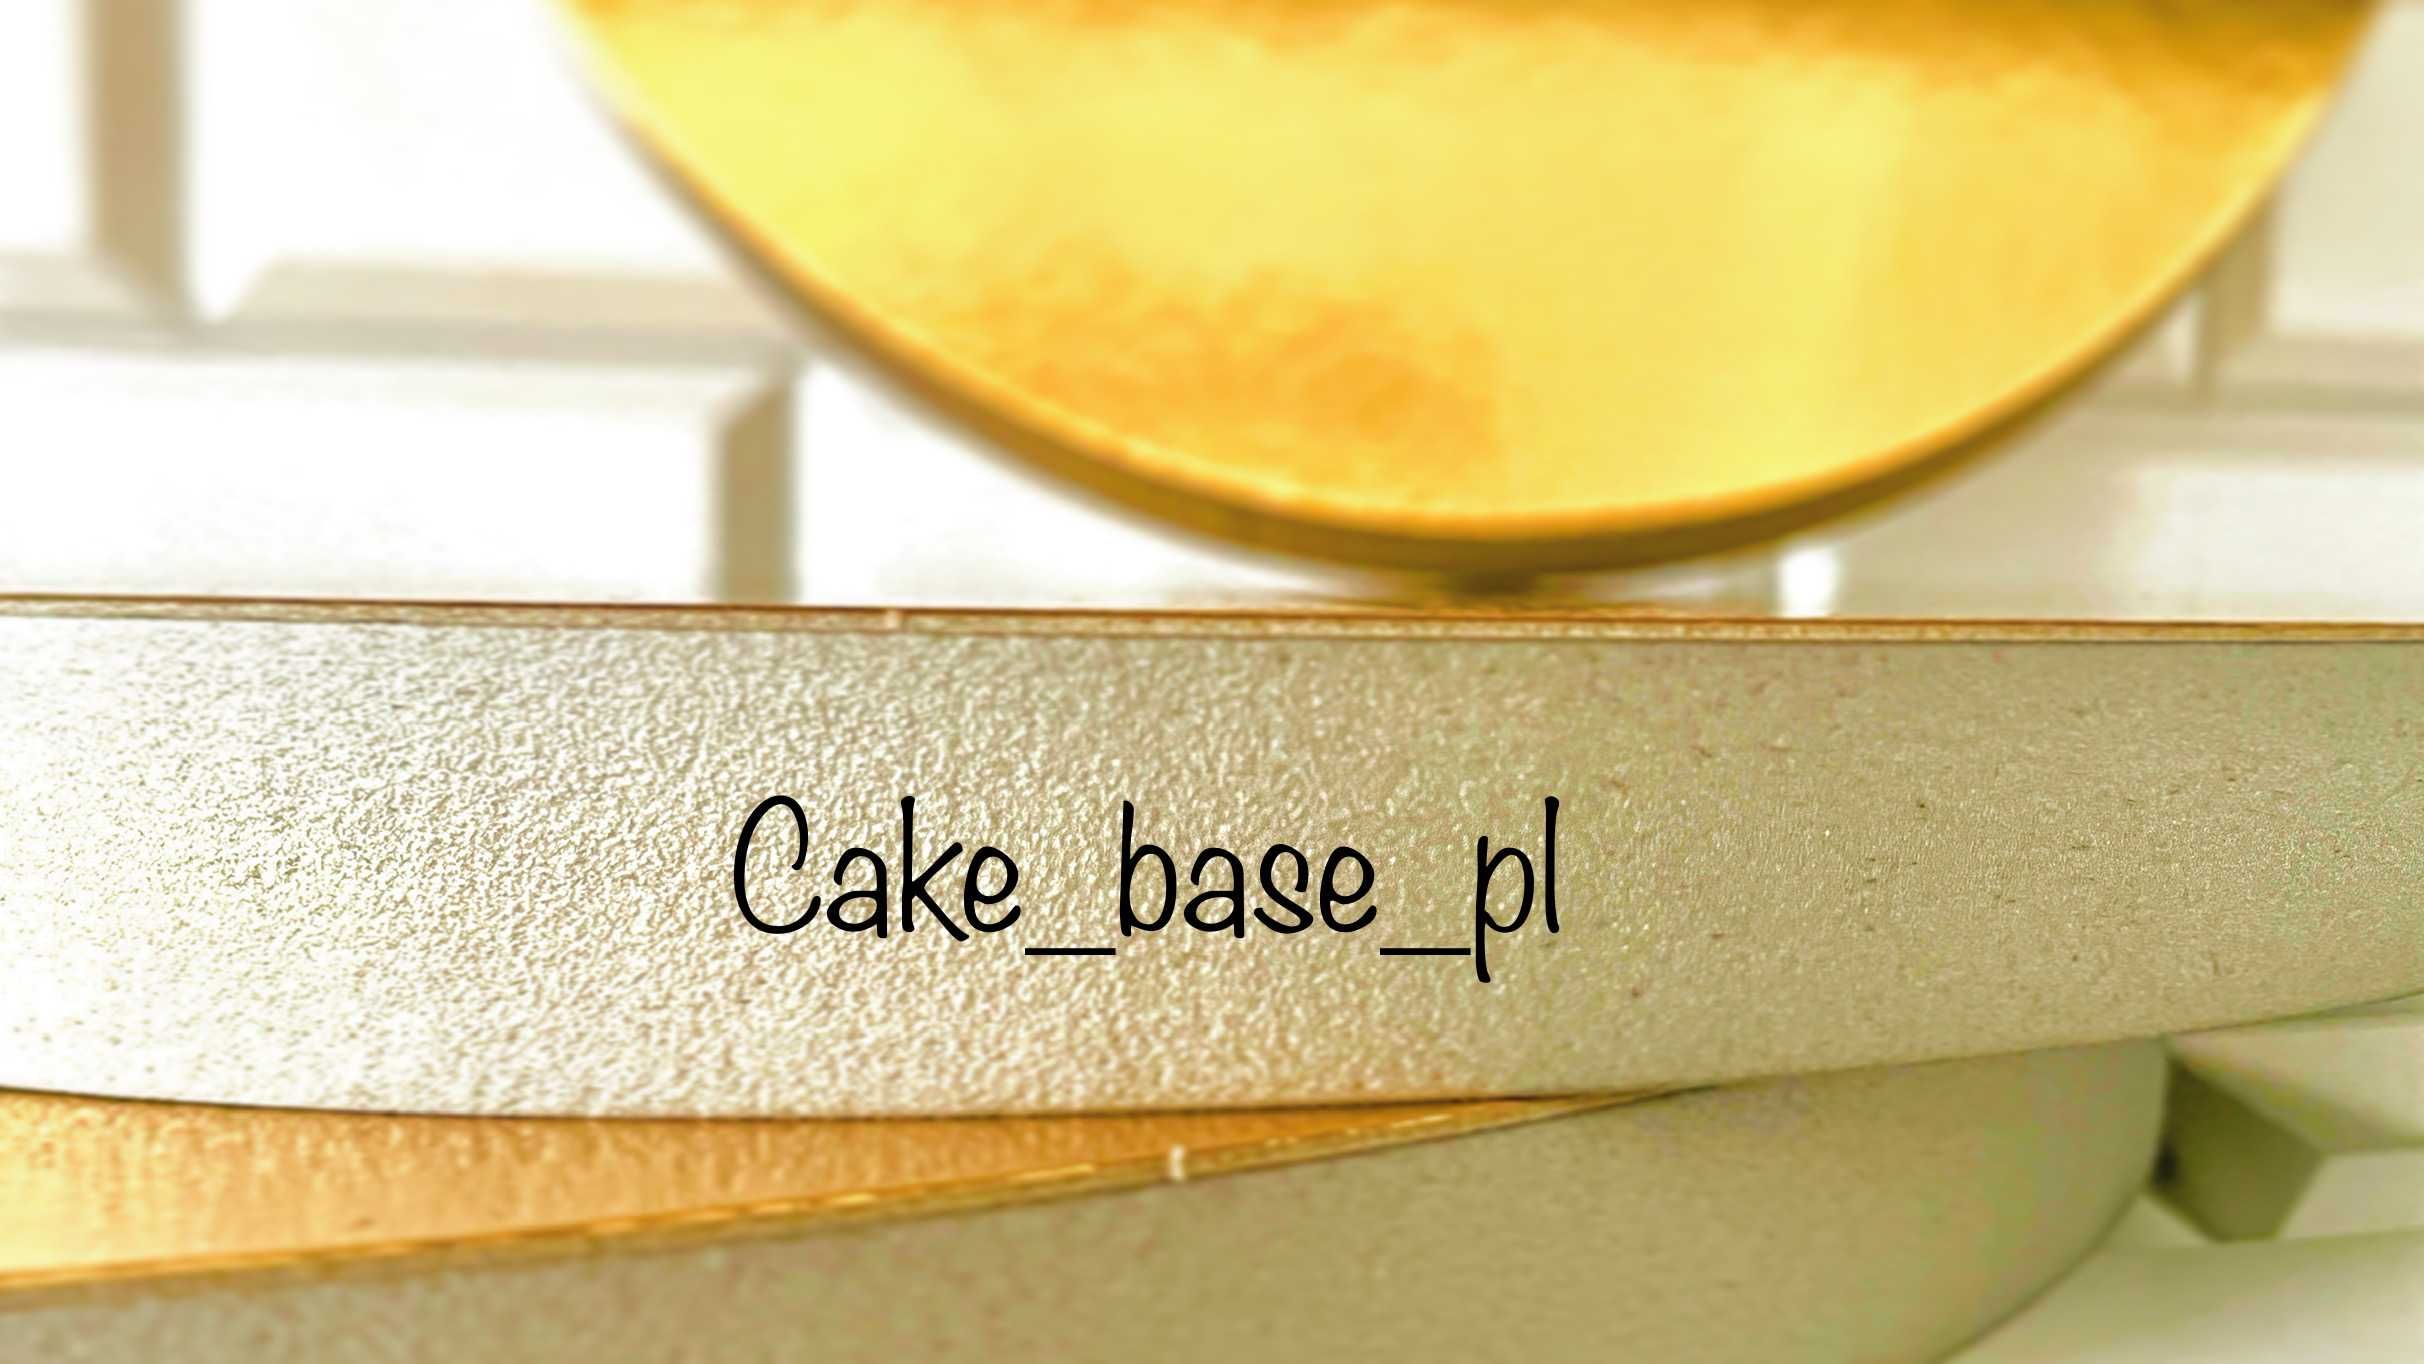 Podkład pod tort/ciasto ze styroduru, fi 24cm, tacka BOX 5szt